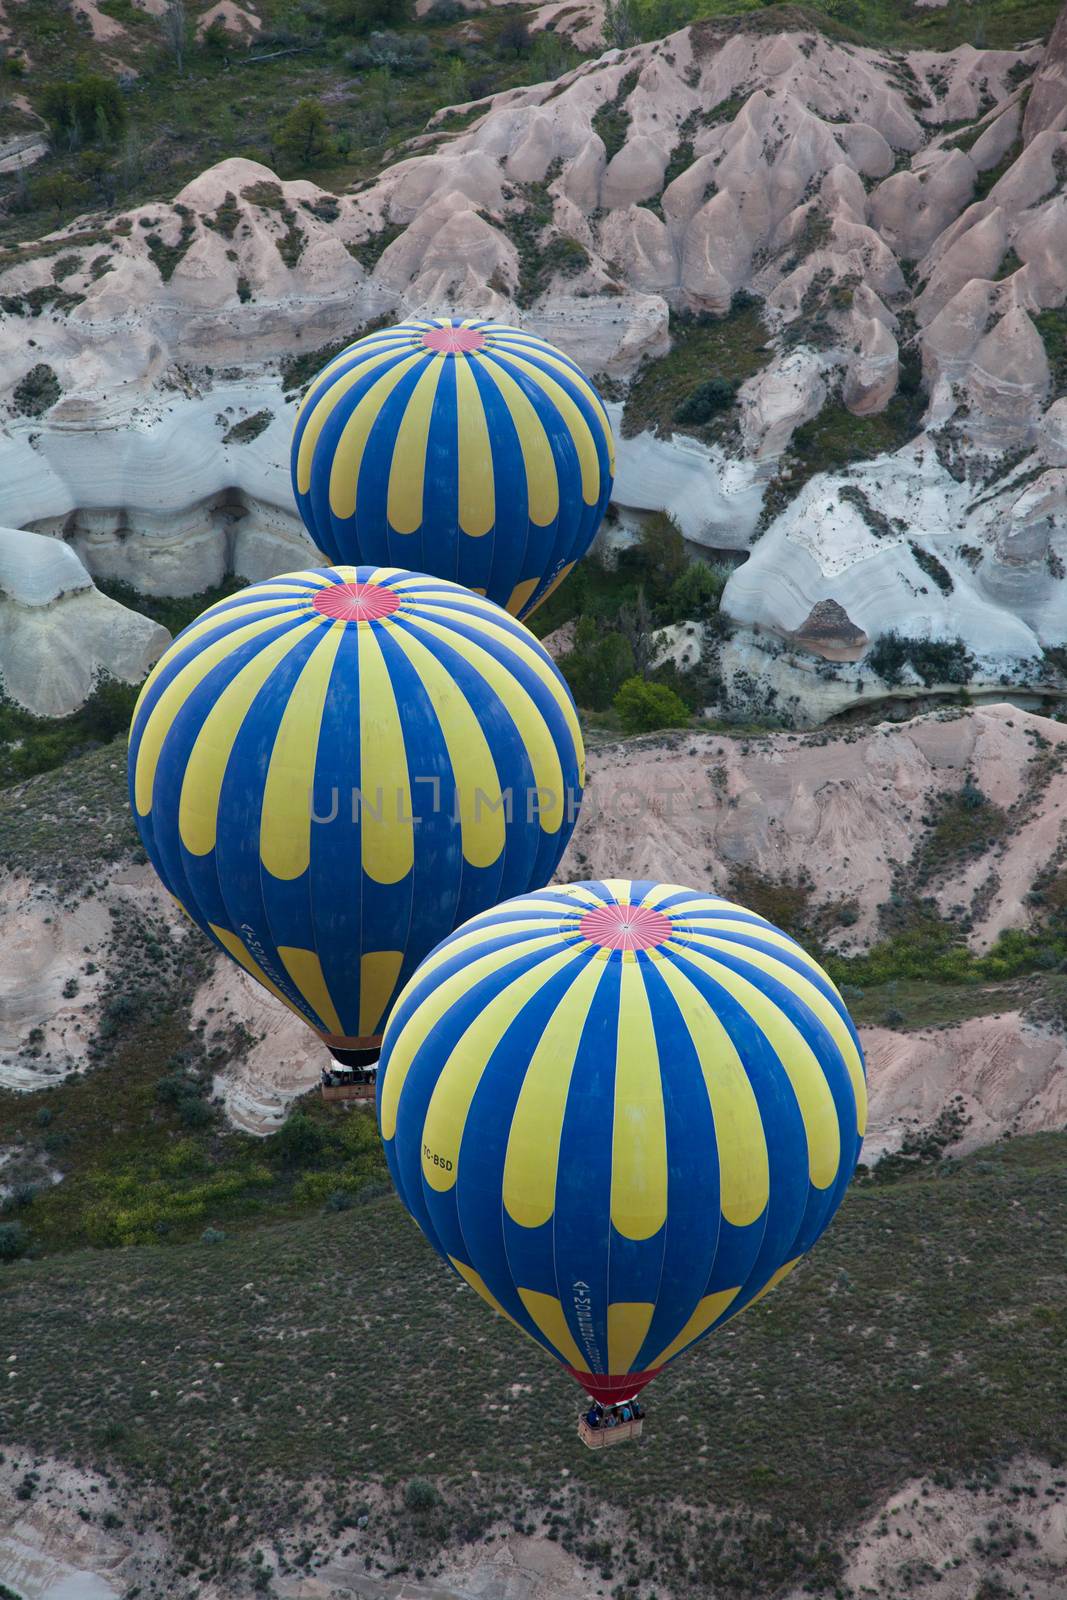 Pair of hot air balloons cruising in air by haiderazim